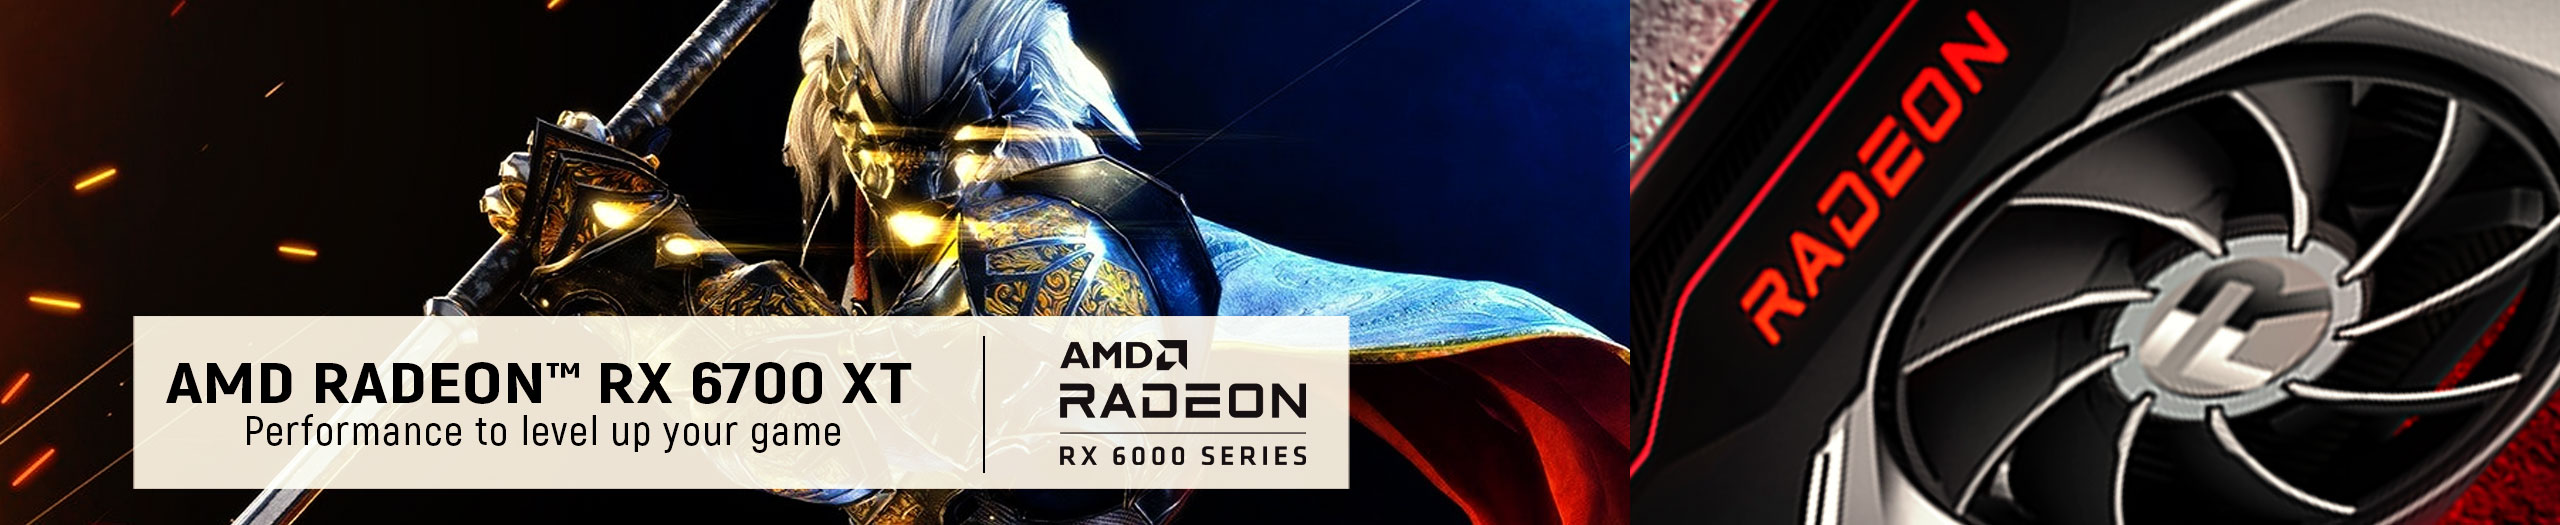 AMD Radeon 6700 Gaming PCs
